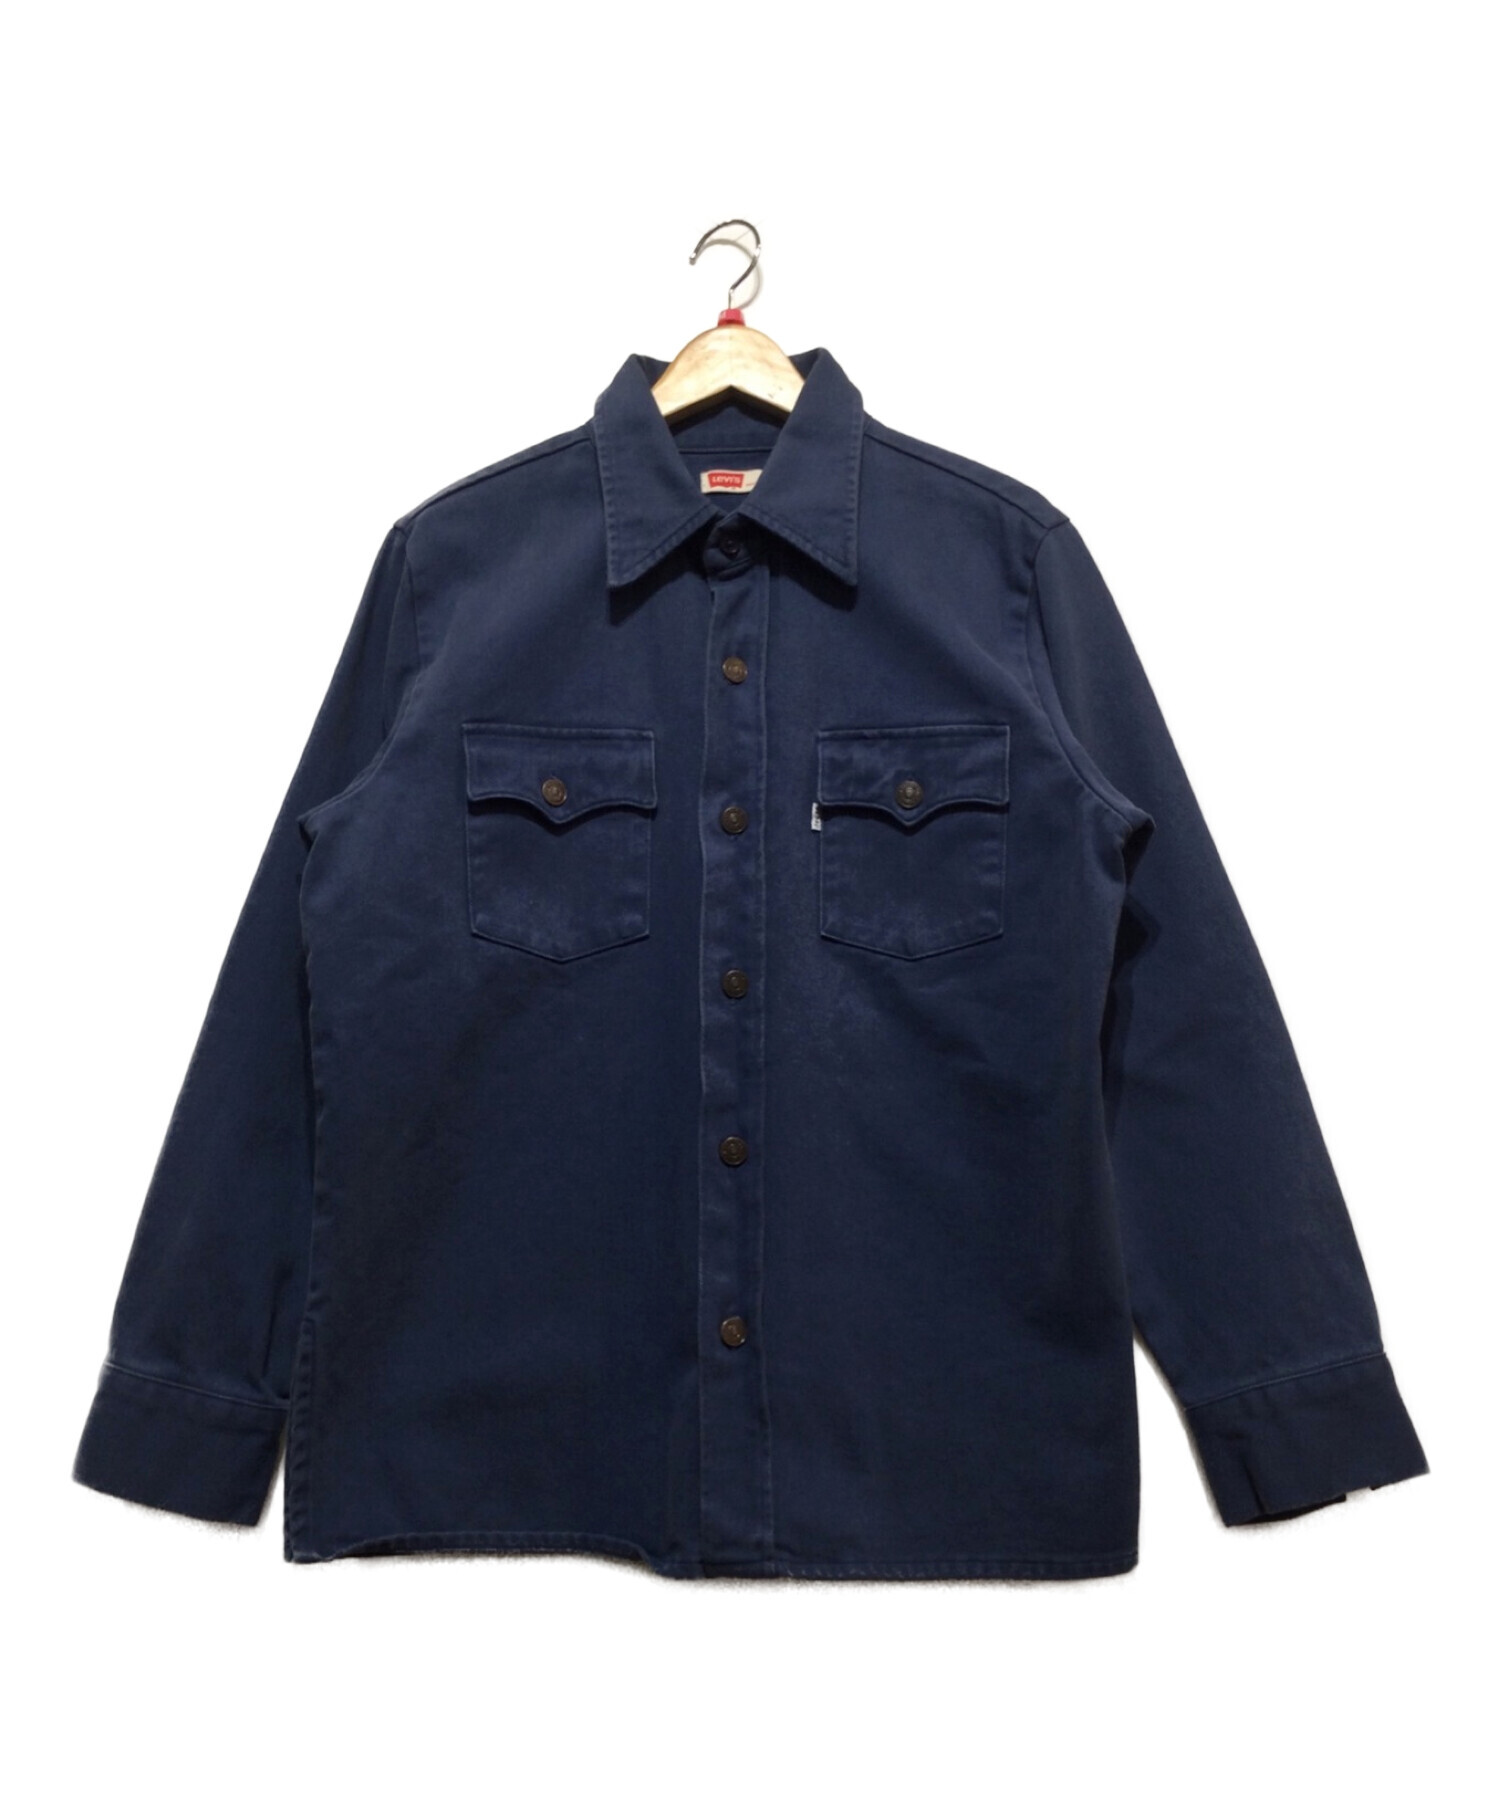 LEVI'S VINTAGE CLOTHING (リーバイスヴィンテージクロージング) シャツジャケット ブルー サイズ:M